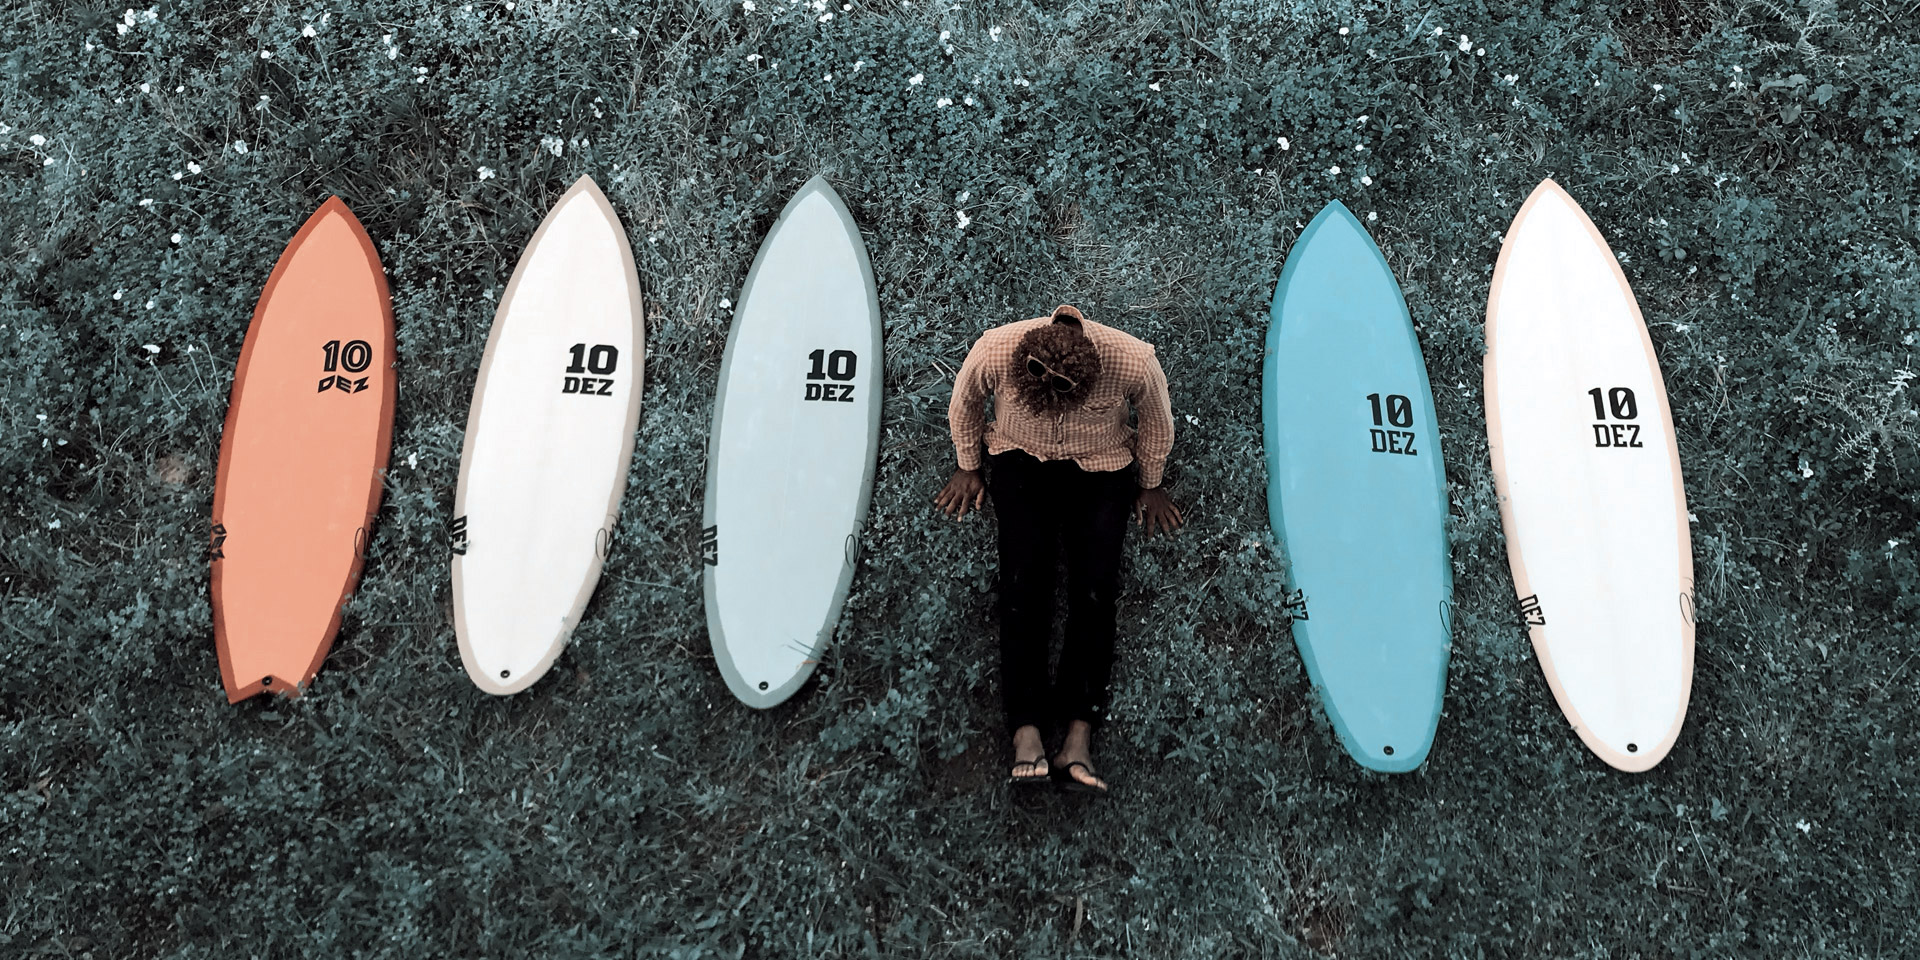 Dez Surfboards